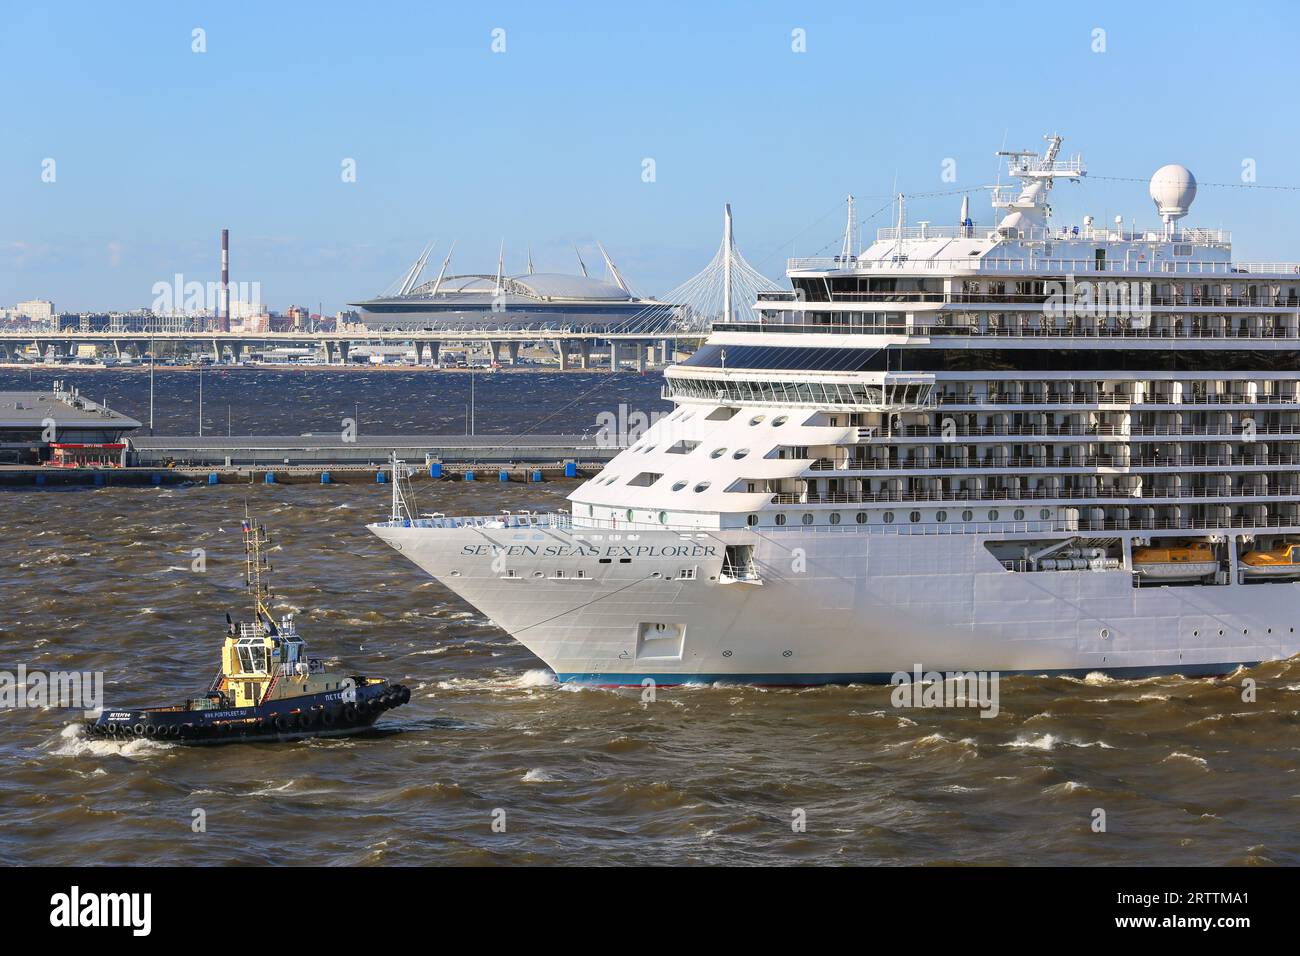 Regent Cruises bateau de croisière de luxe Seven Seas Explorer quittant le terminal de croisière de Saint-Pétersbourg n ° 1 et le stade Krestovsky Gazprom, Russie, remorqueur Banque D'Images